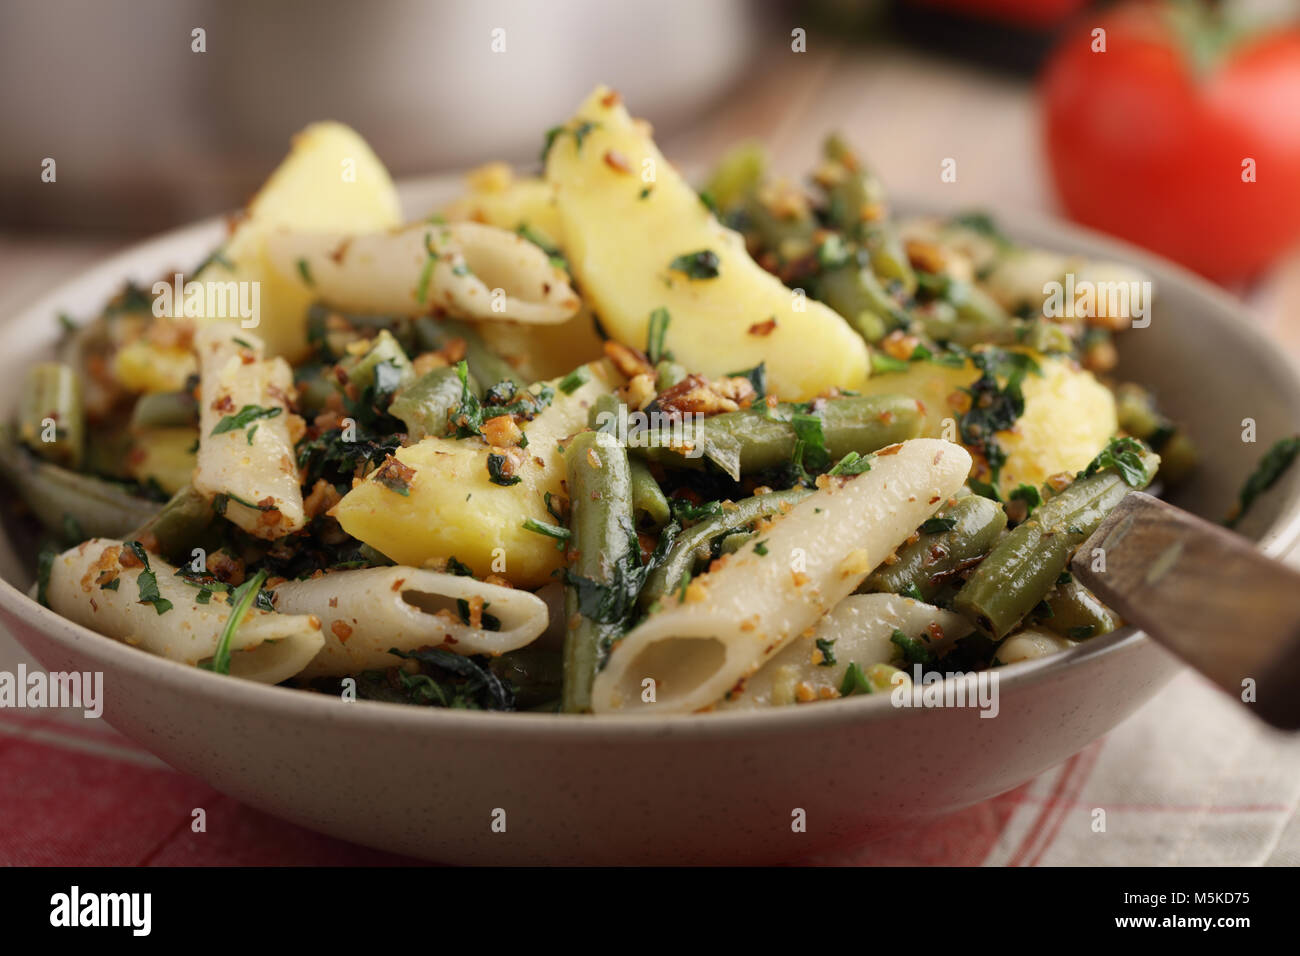 Pasta, potato, and green beans with pesto Stock Photo